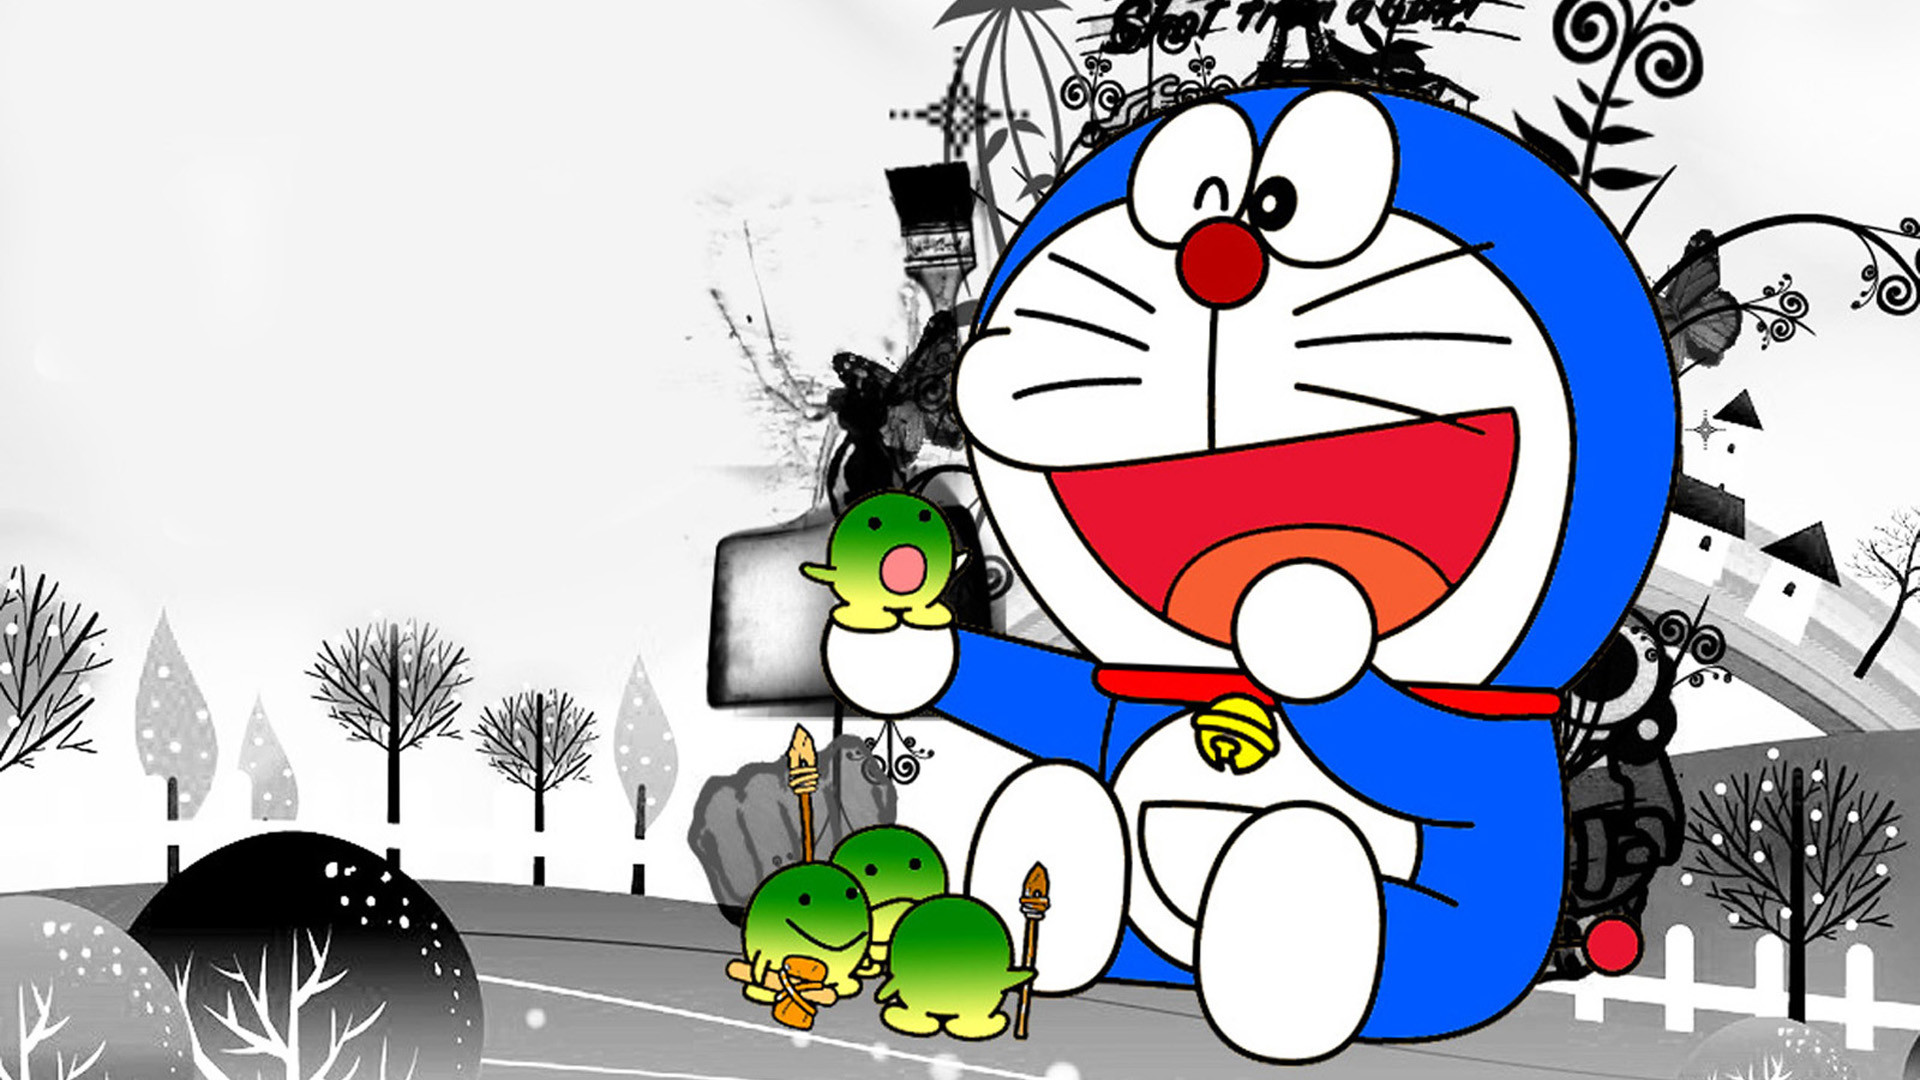 Doraemon luôn làm chúng ta cười sảng khoái. Hình ảnh Doraemon và những người bạn của mình chắc chắn sẽ khiến bạn cảm thấy vui vẻ và thoải mái. Cùng chiêm ngưỡng các hình ảnh Doraemon và nhóm bạn thân thiết của mình để tìm được nguồn cảm hứng mới nhé!